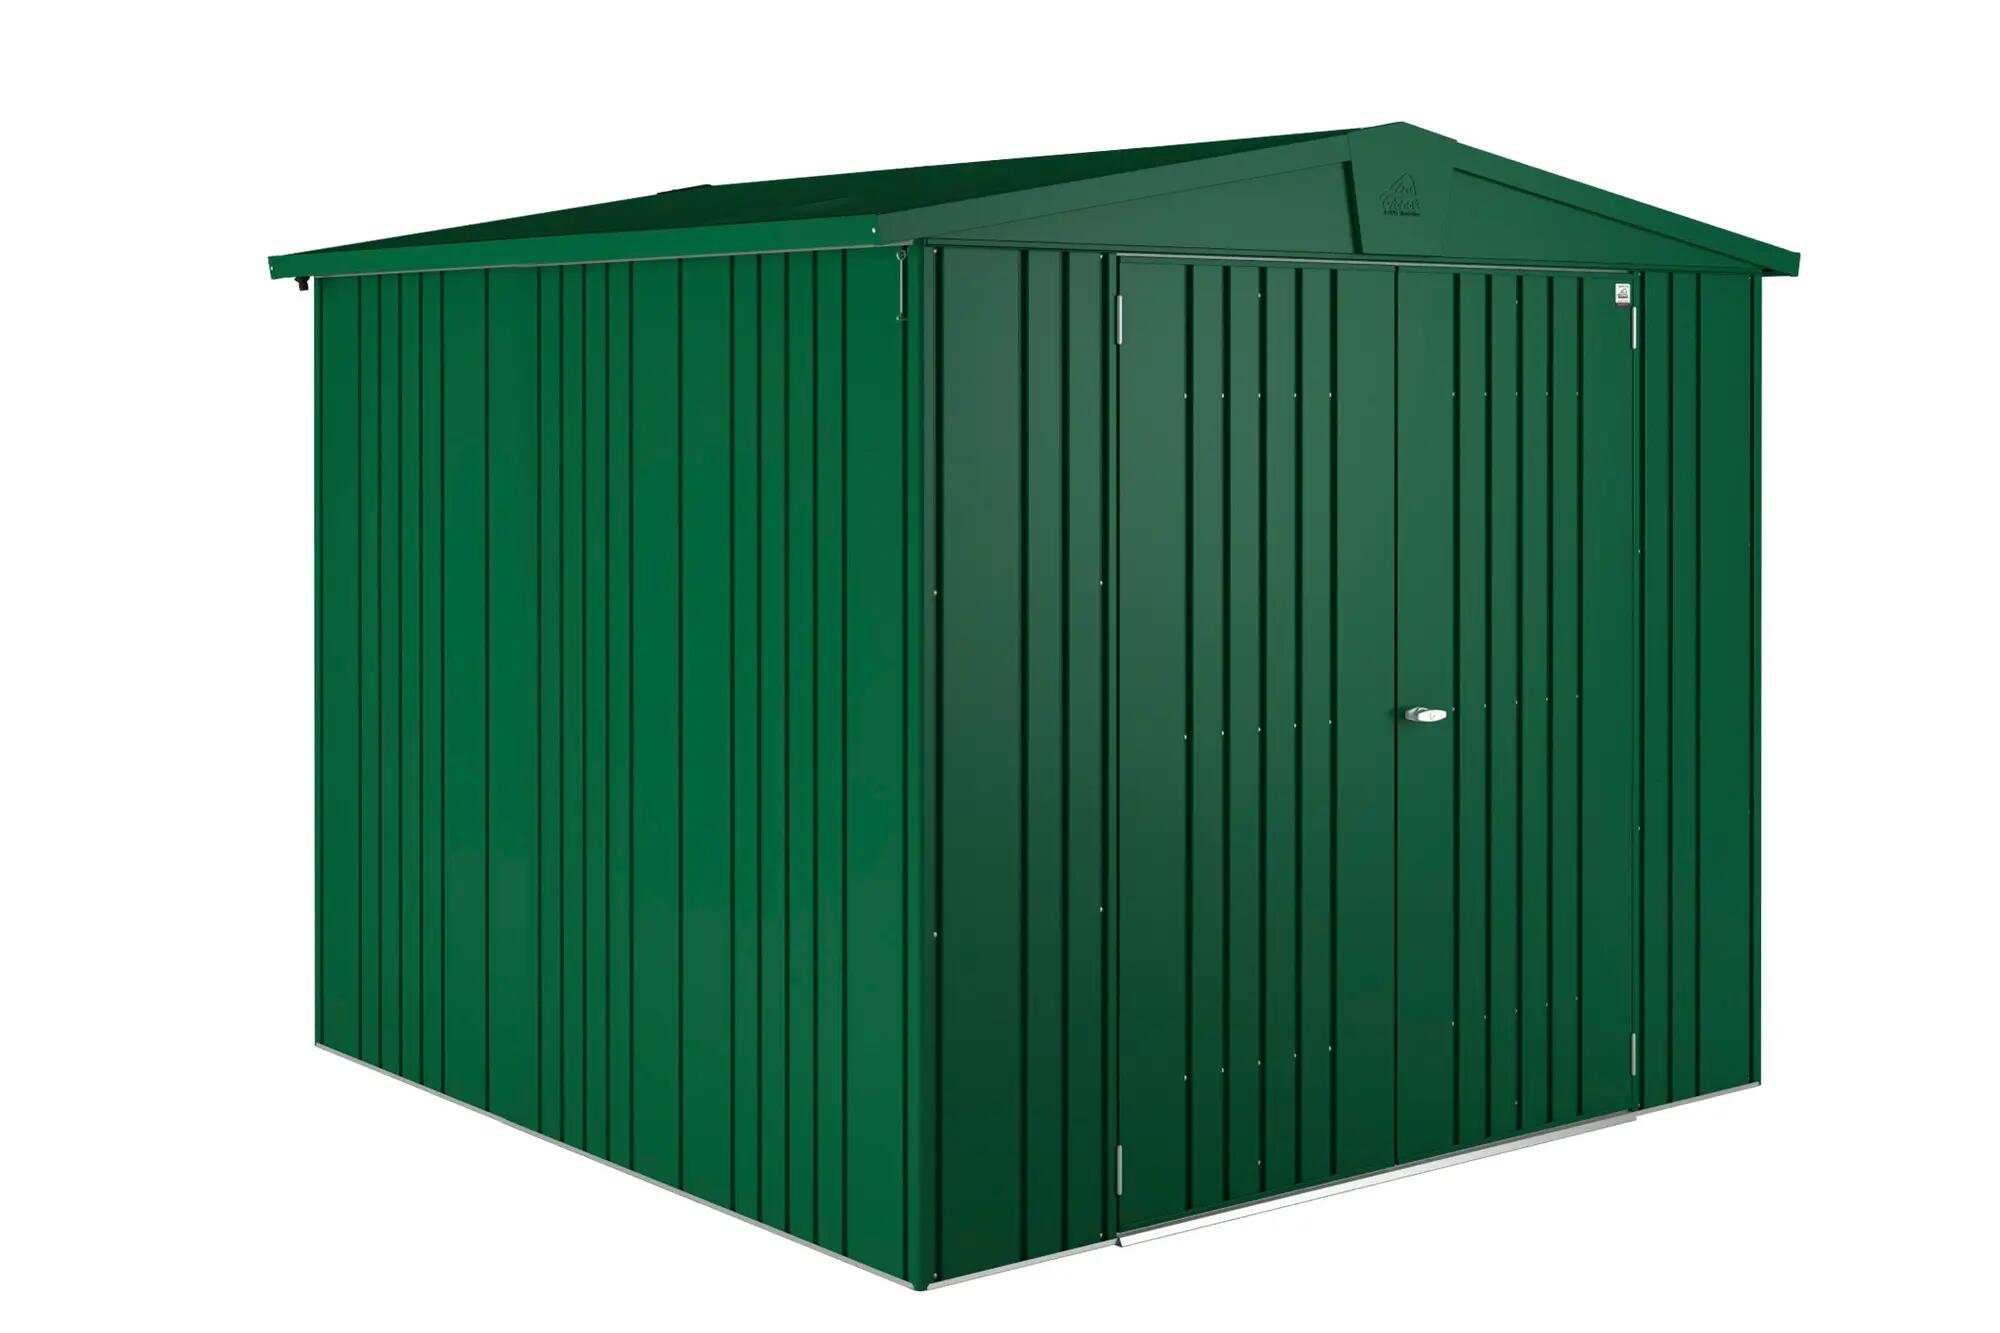 Caseta de metal europa verde de 244x203x228 cm y 5.56 m2